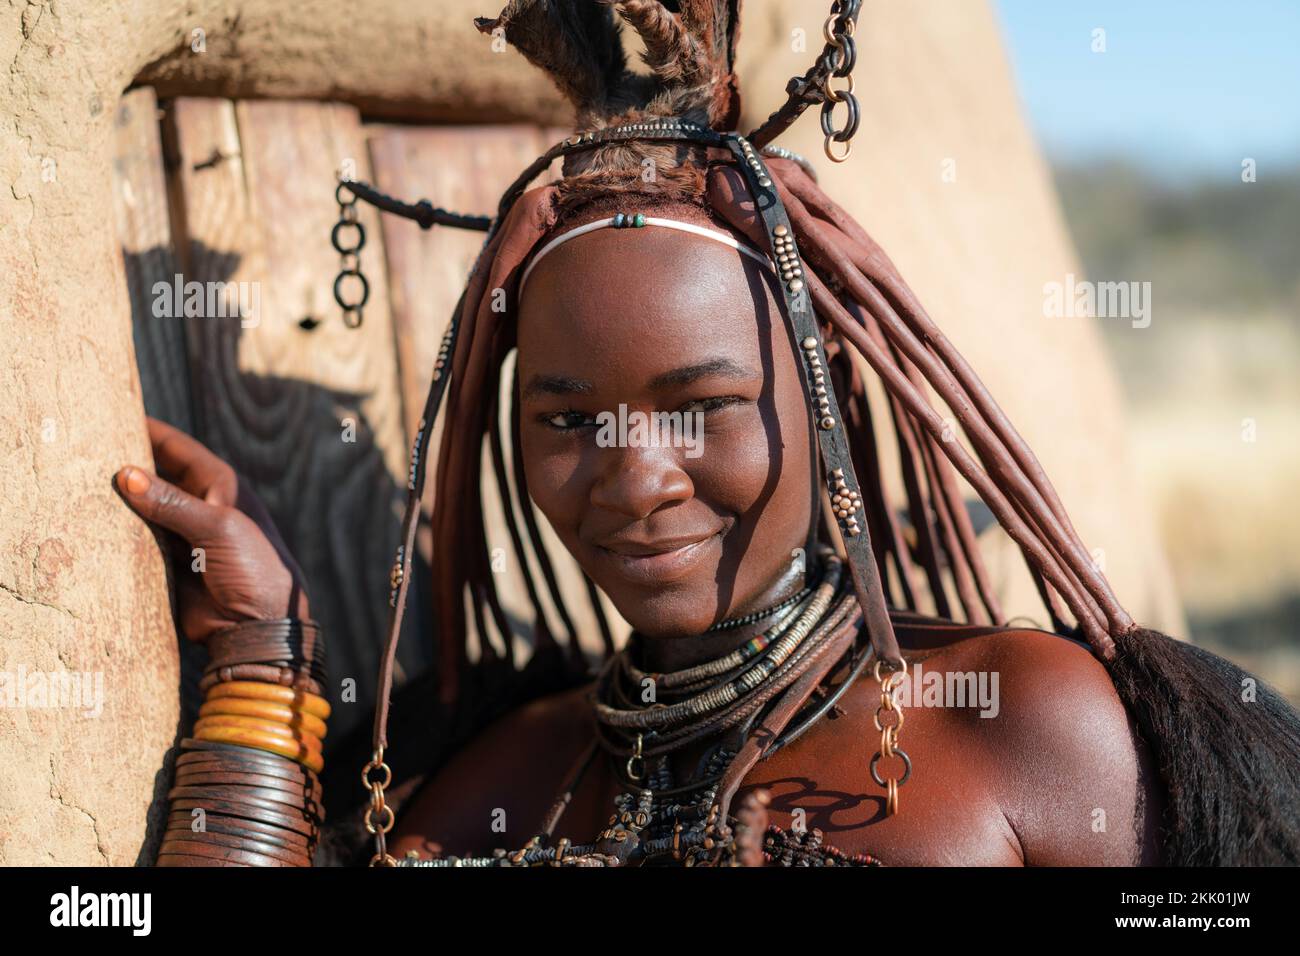 Junge Himba-Frau in Namibia, Afrika, in traditionellem Stil gekleidet. Stockfoto